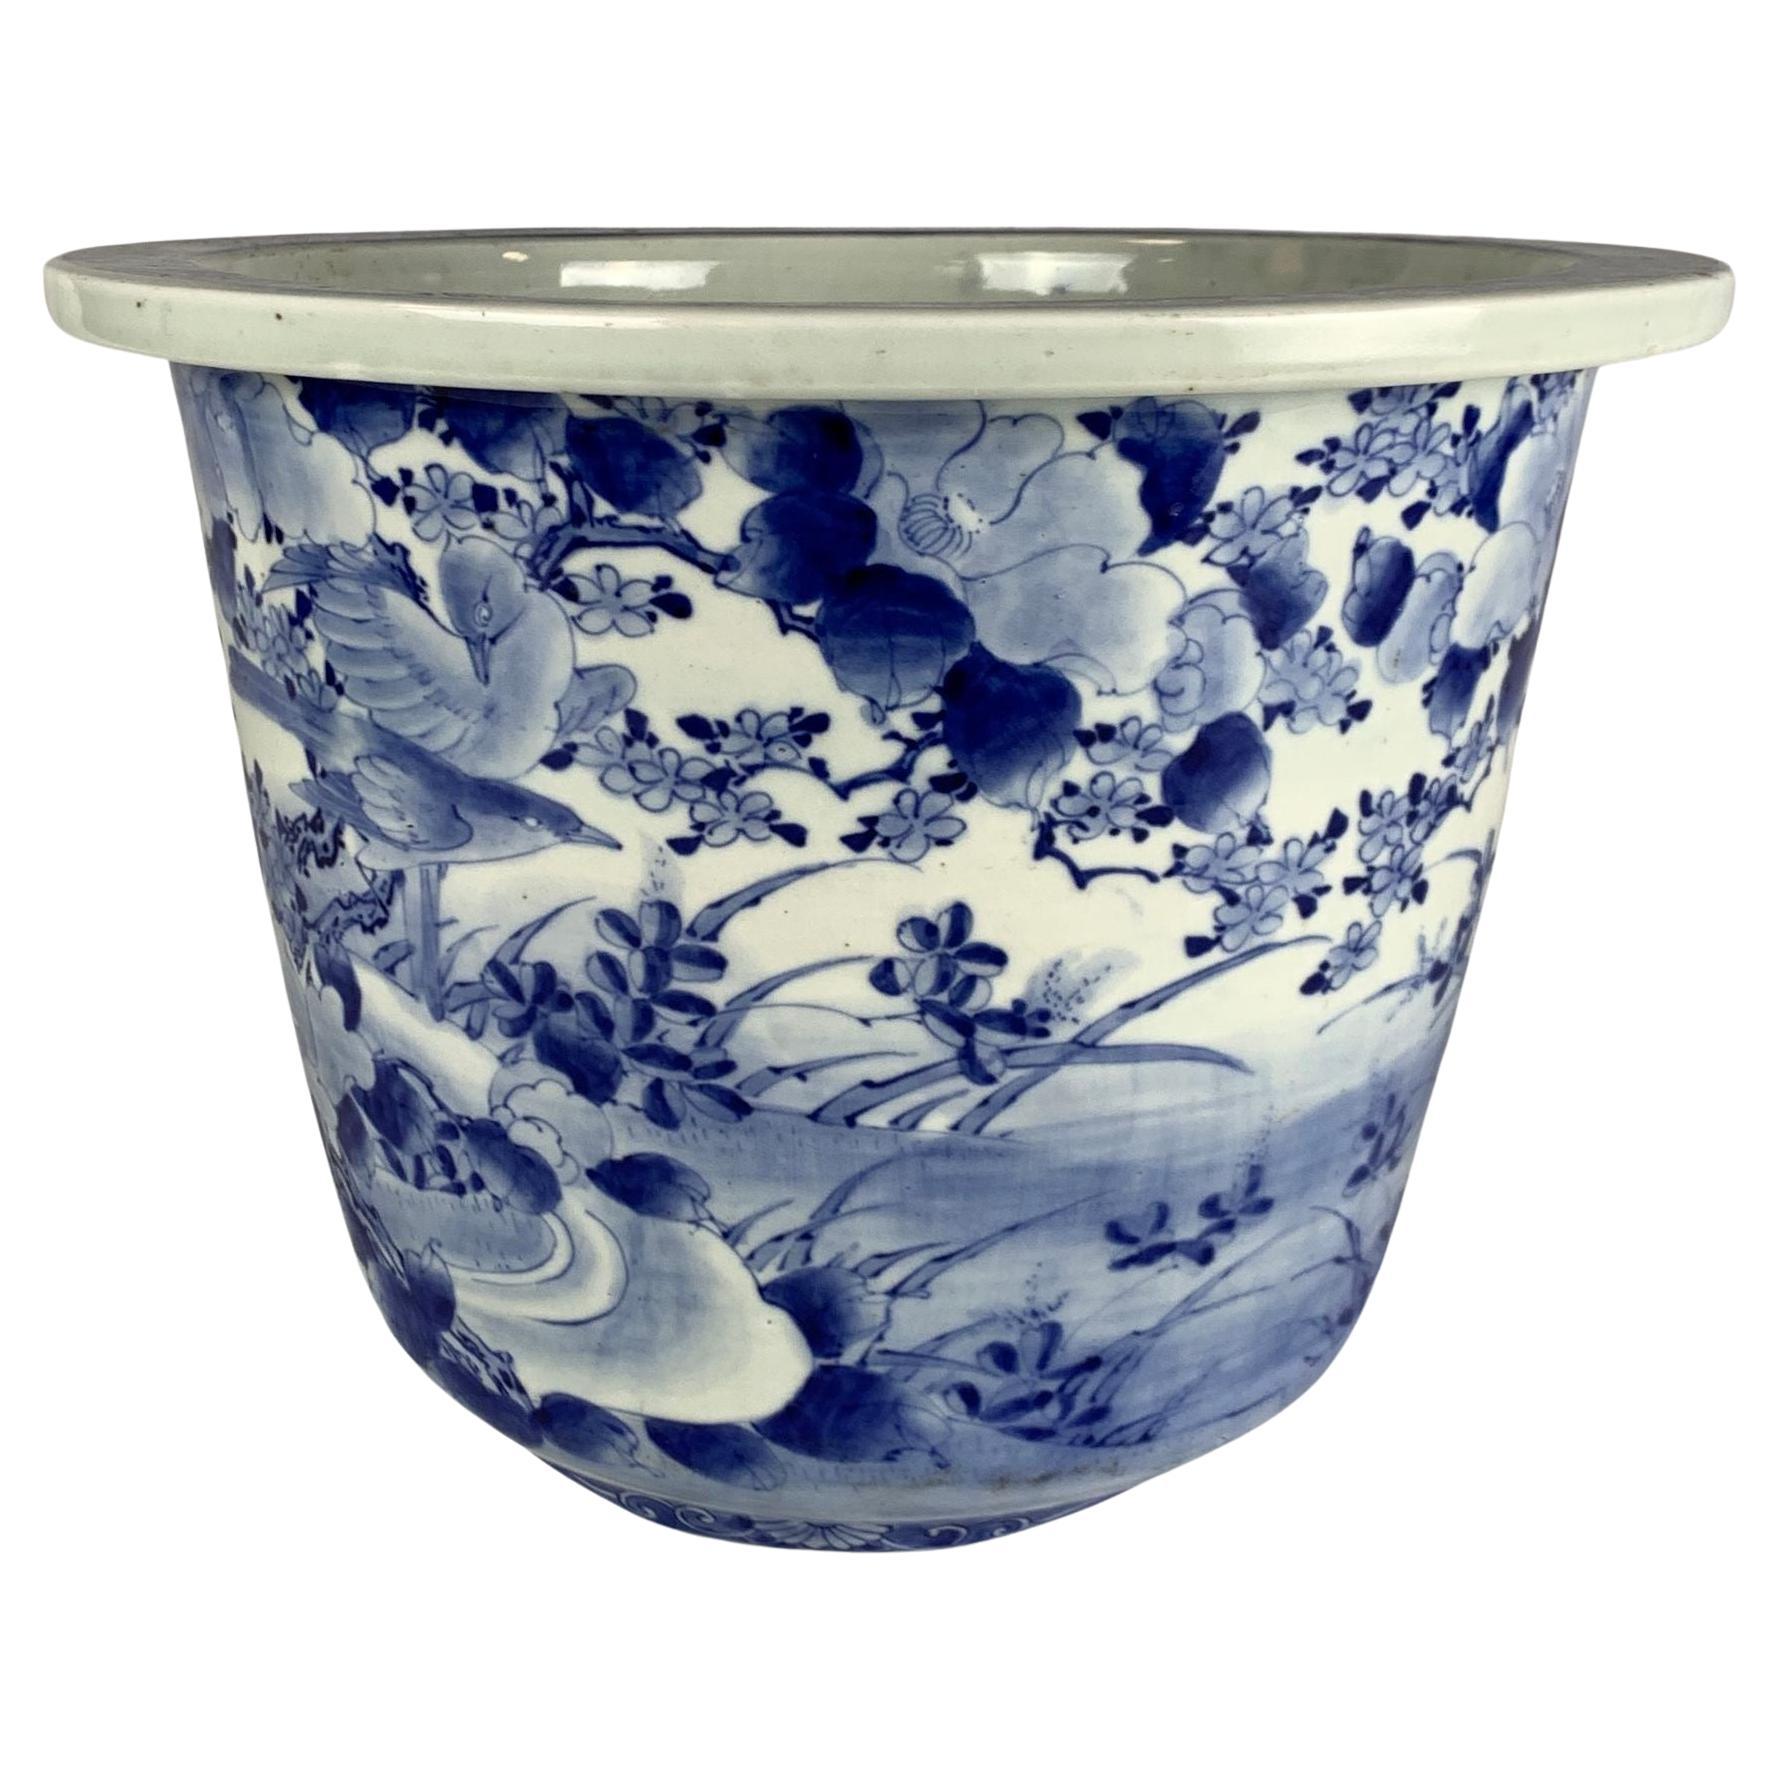 Grande jardinière en porcelaine japonaise du début du 20e siècle